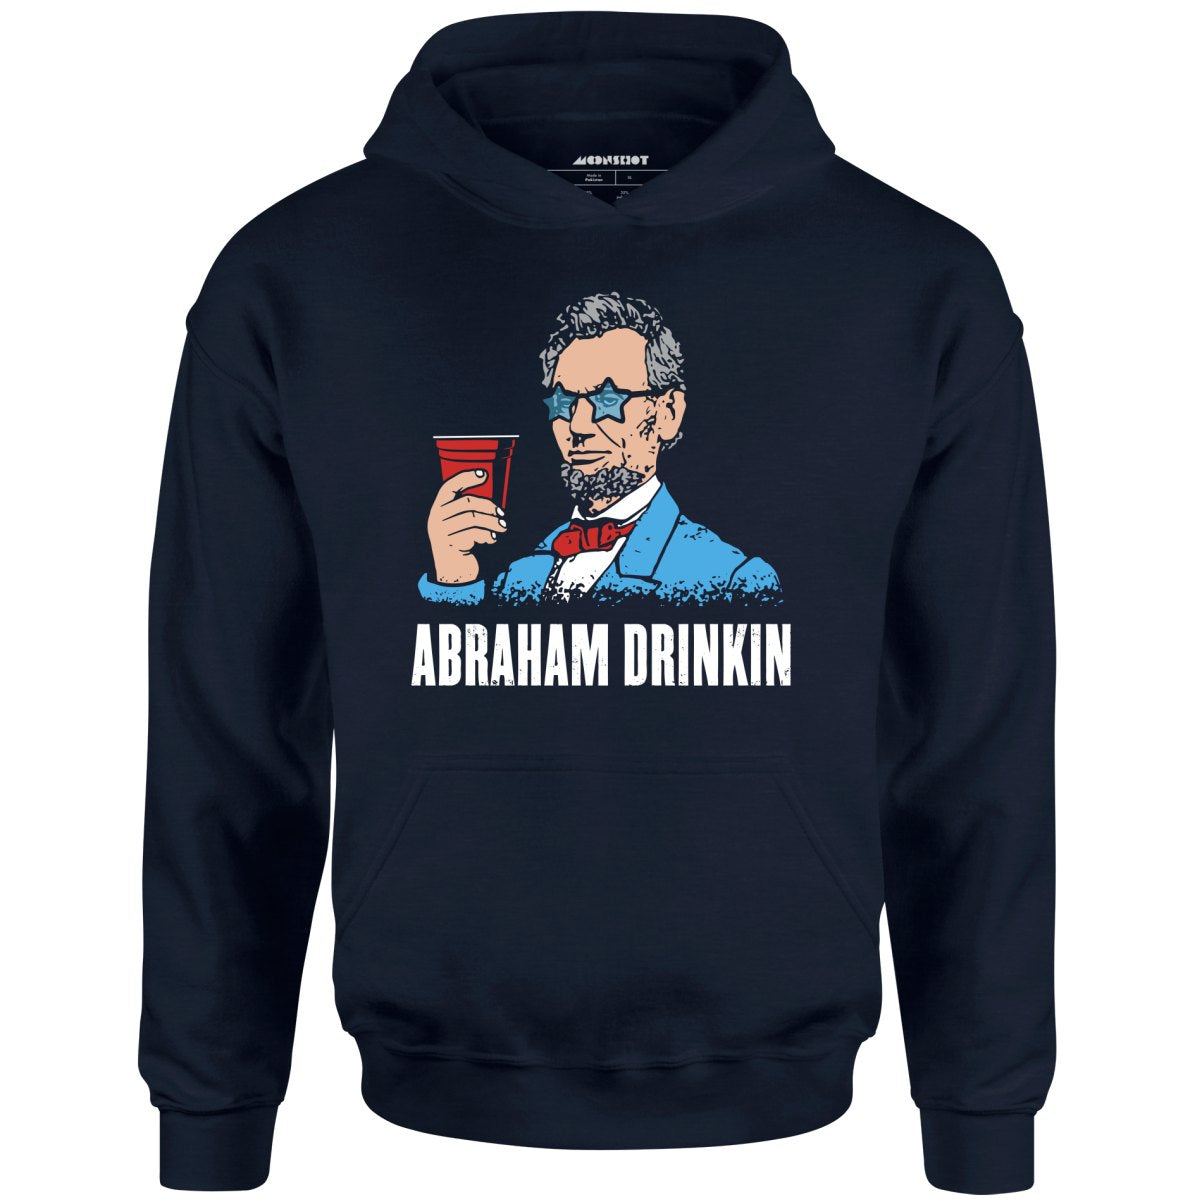 Abraham Drinkin - Unisex Hoodie